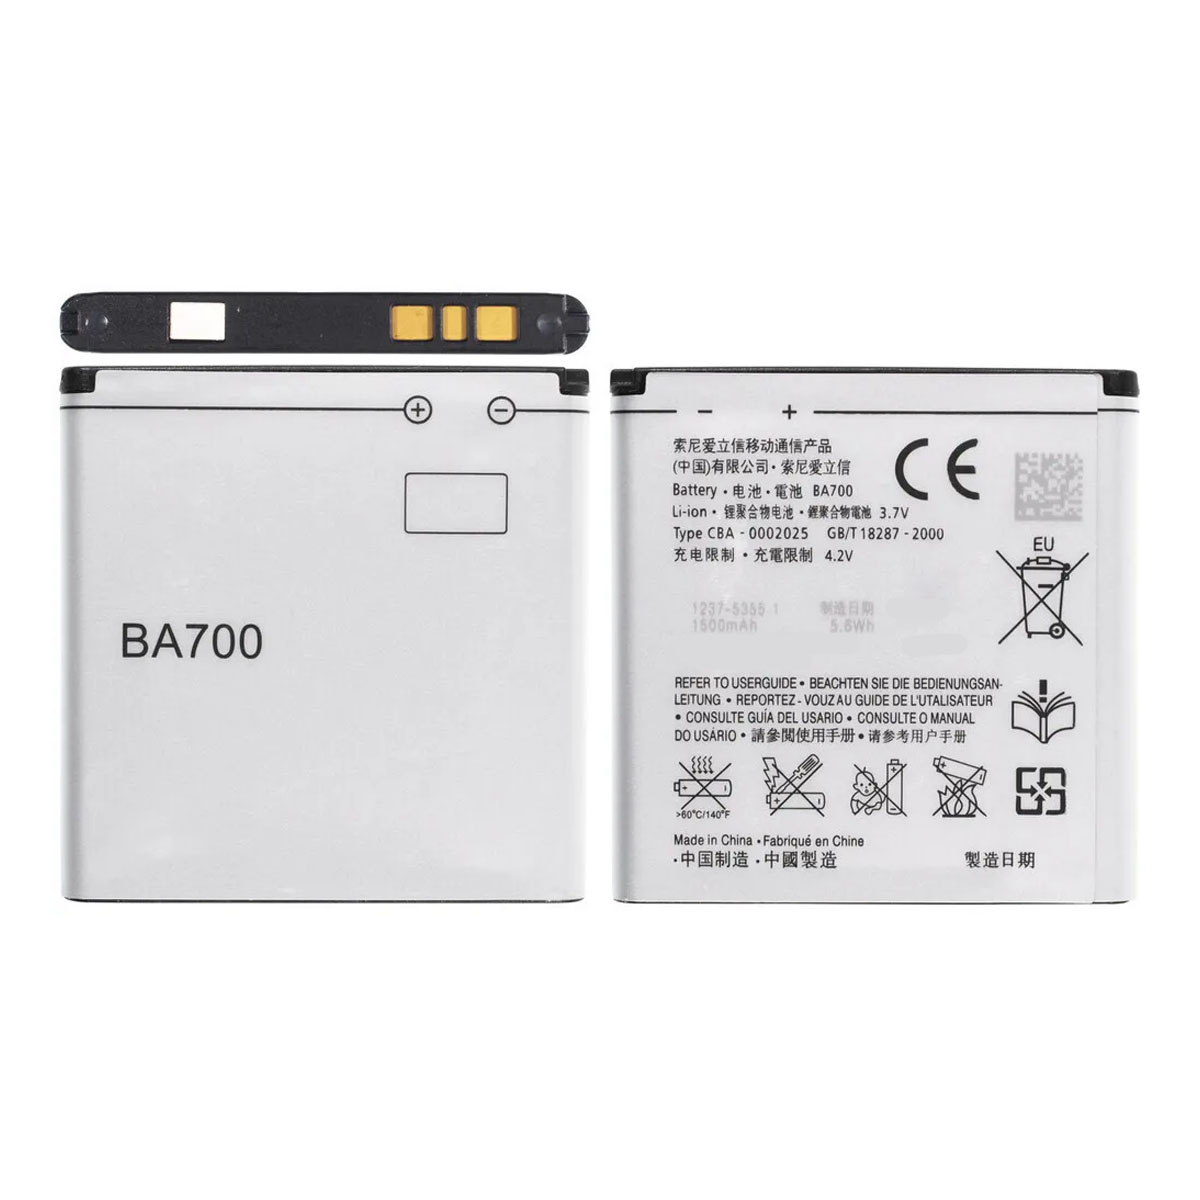 АКБ (Аккумулятор) BA700 для Sony Xperia E (C1505), цвет серый